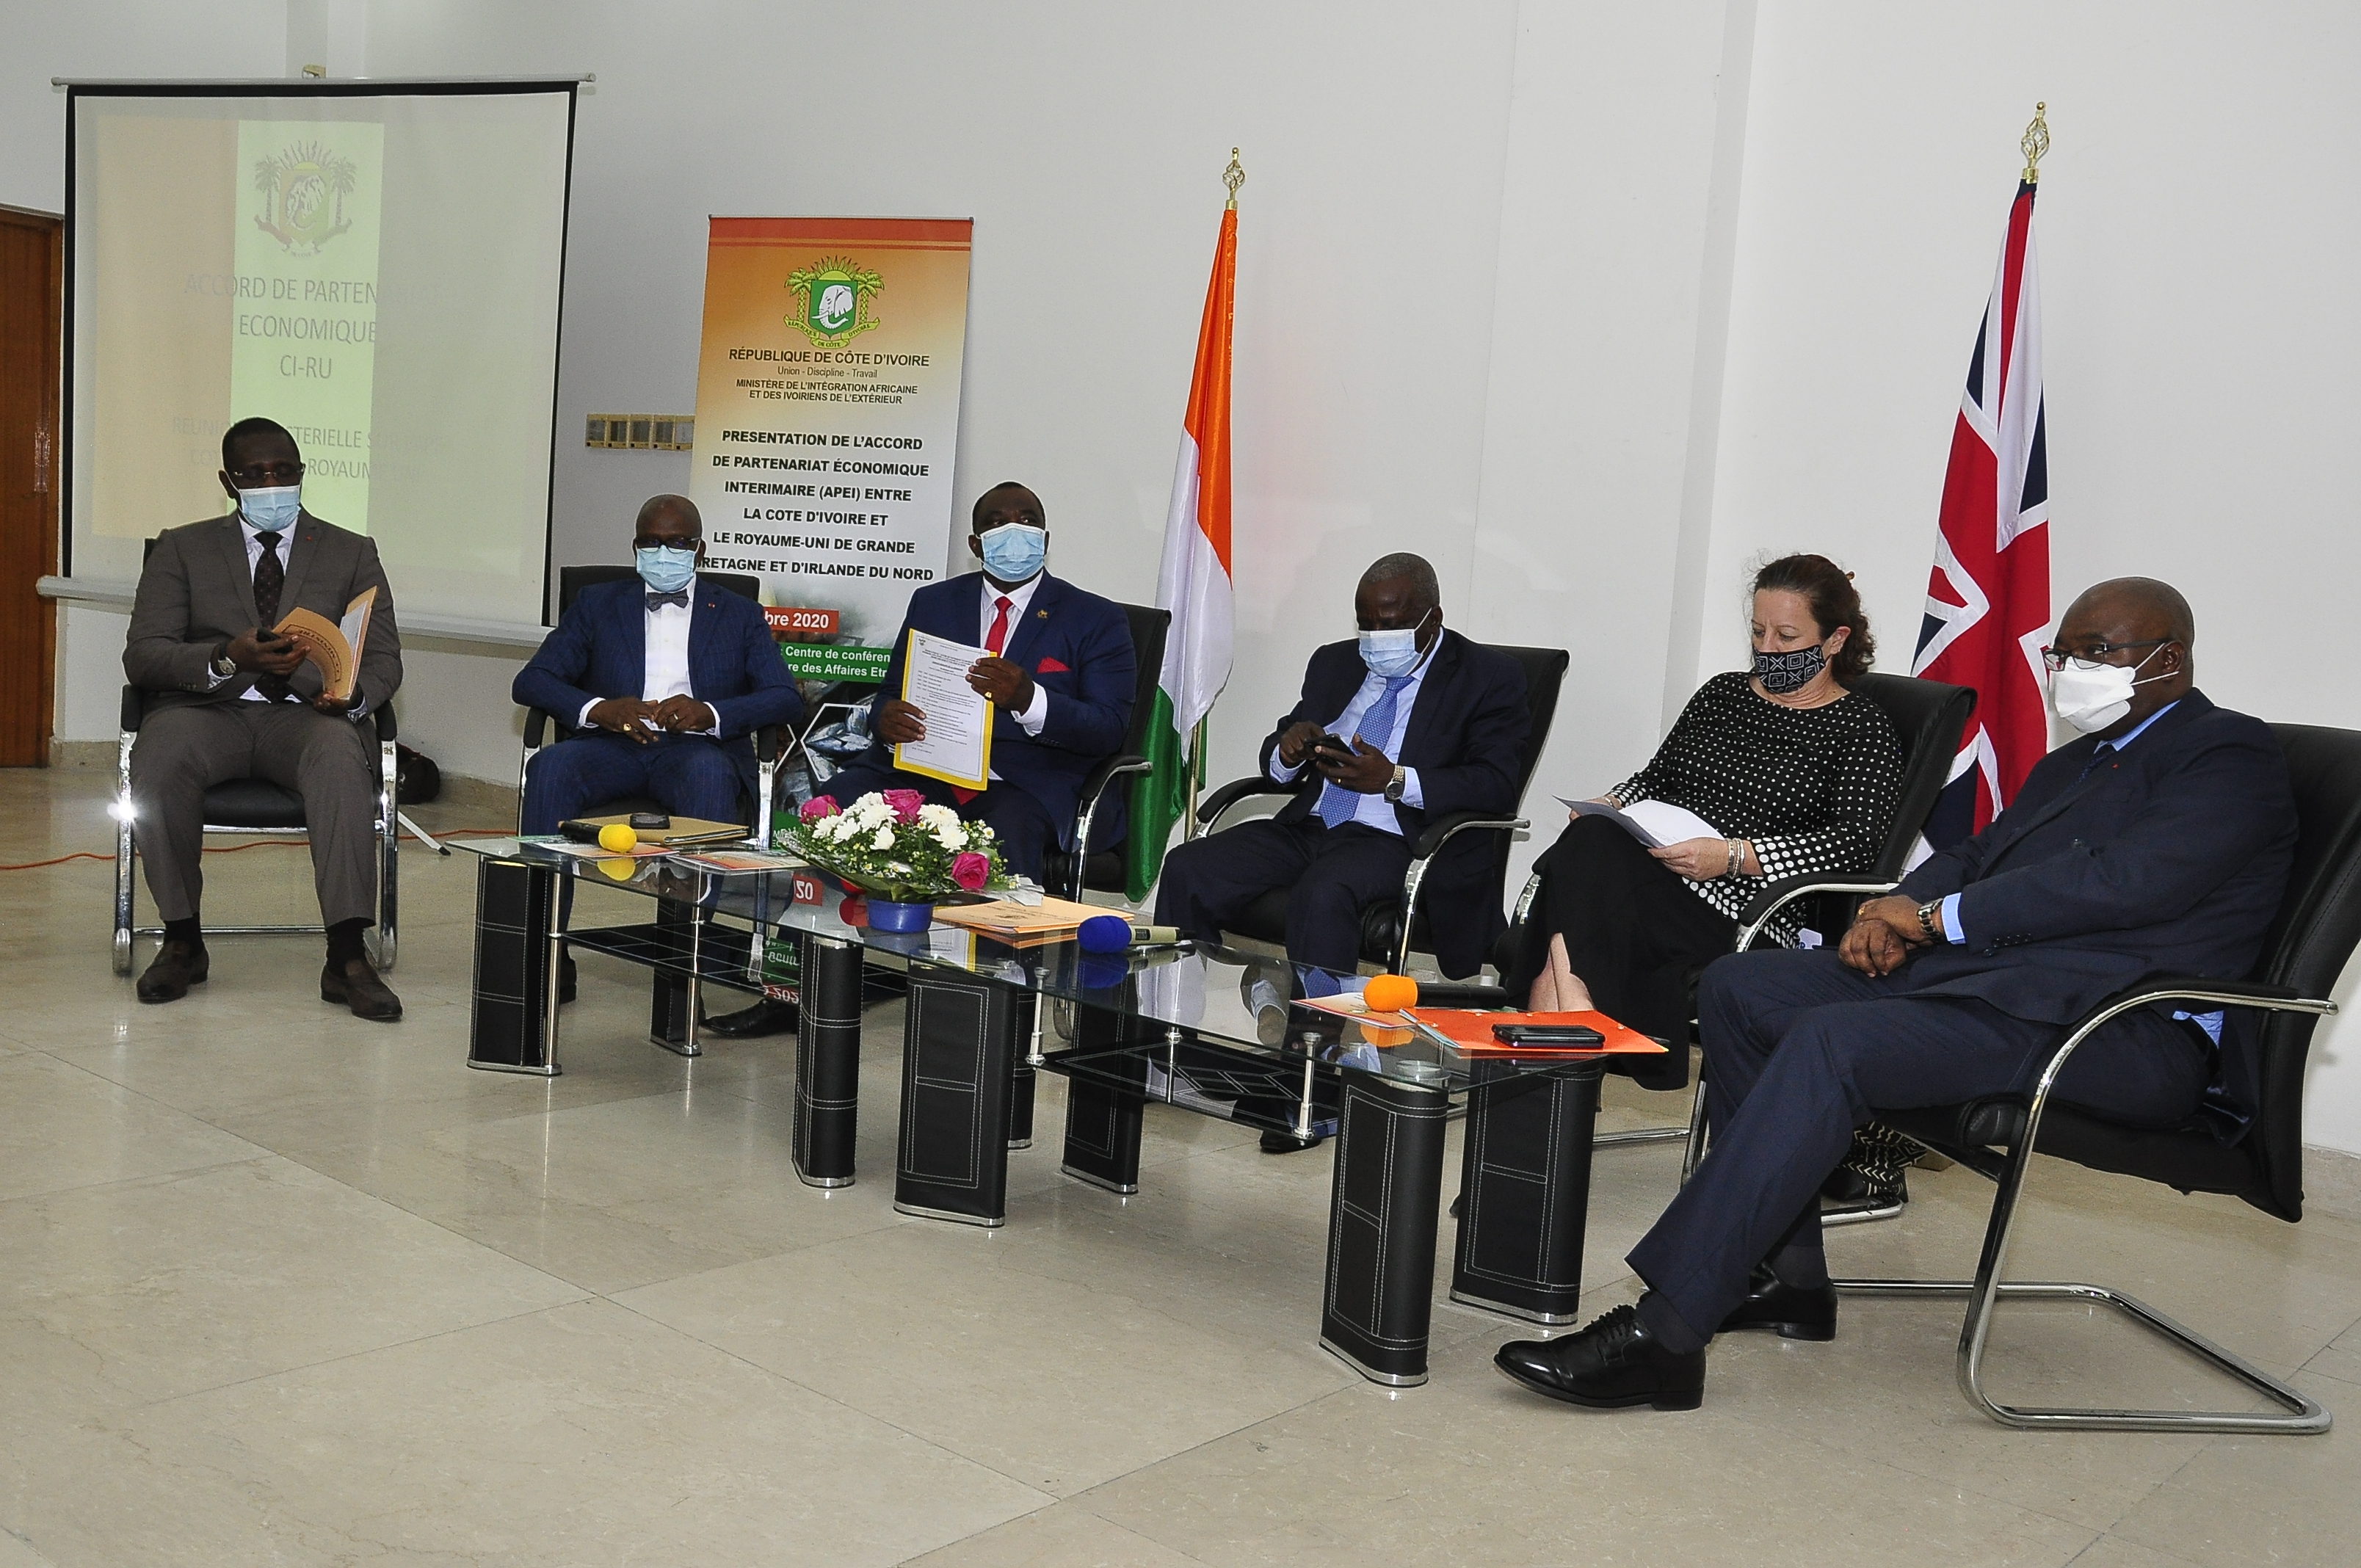 Accord de Partenariat Economique Intérimaire : Le nouvel accord de partenariat entre le Royaume Uni et la Côte d’Ivoire dévoilé au public